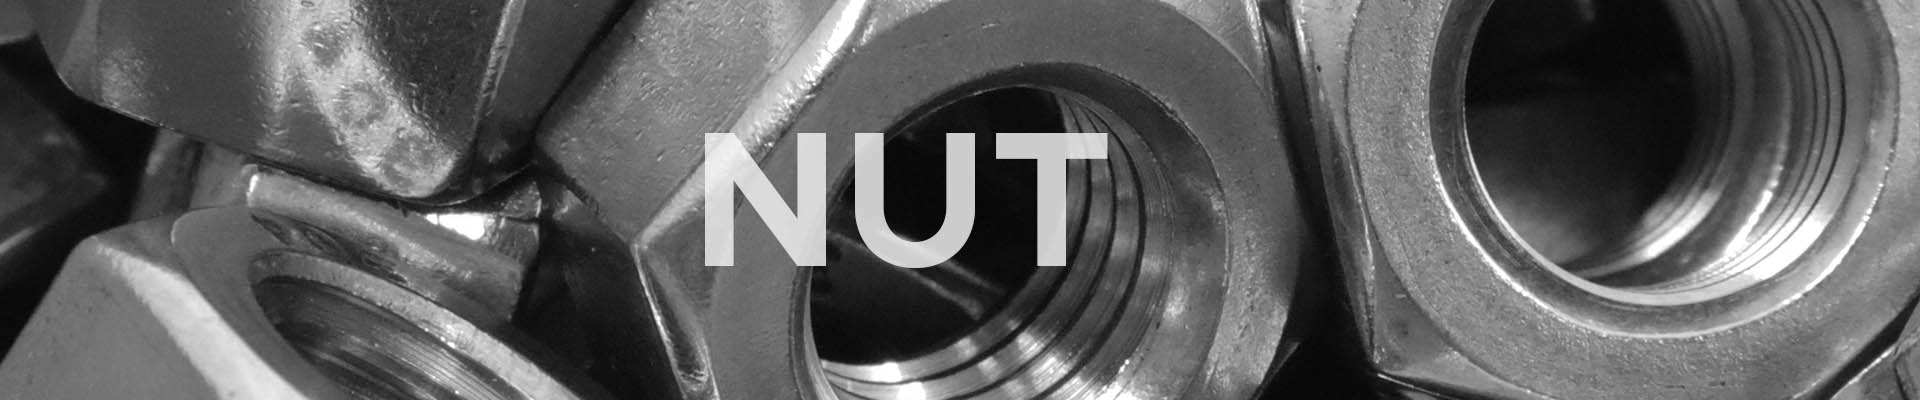 banner-nut